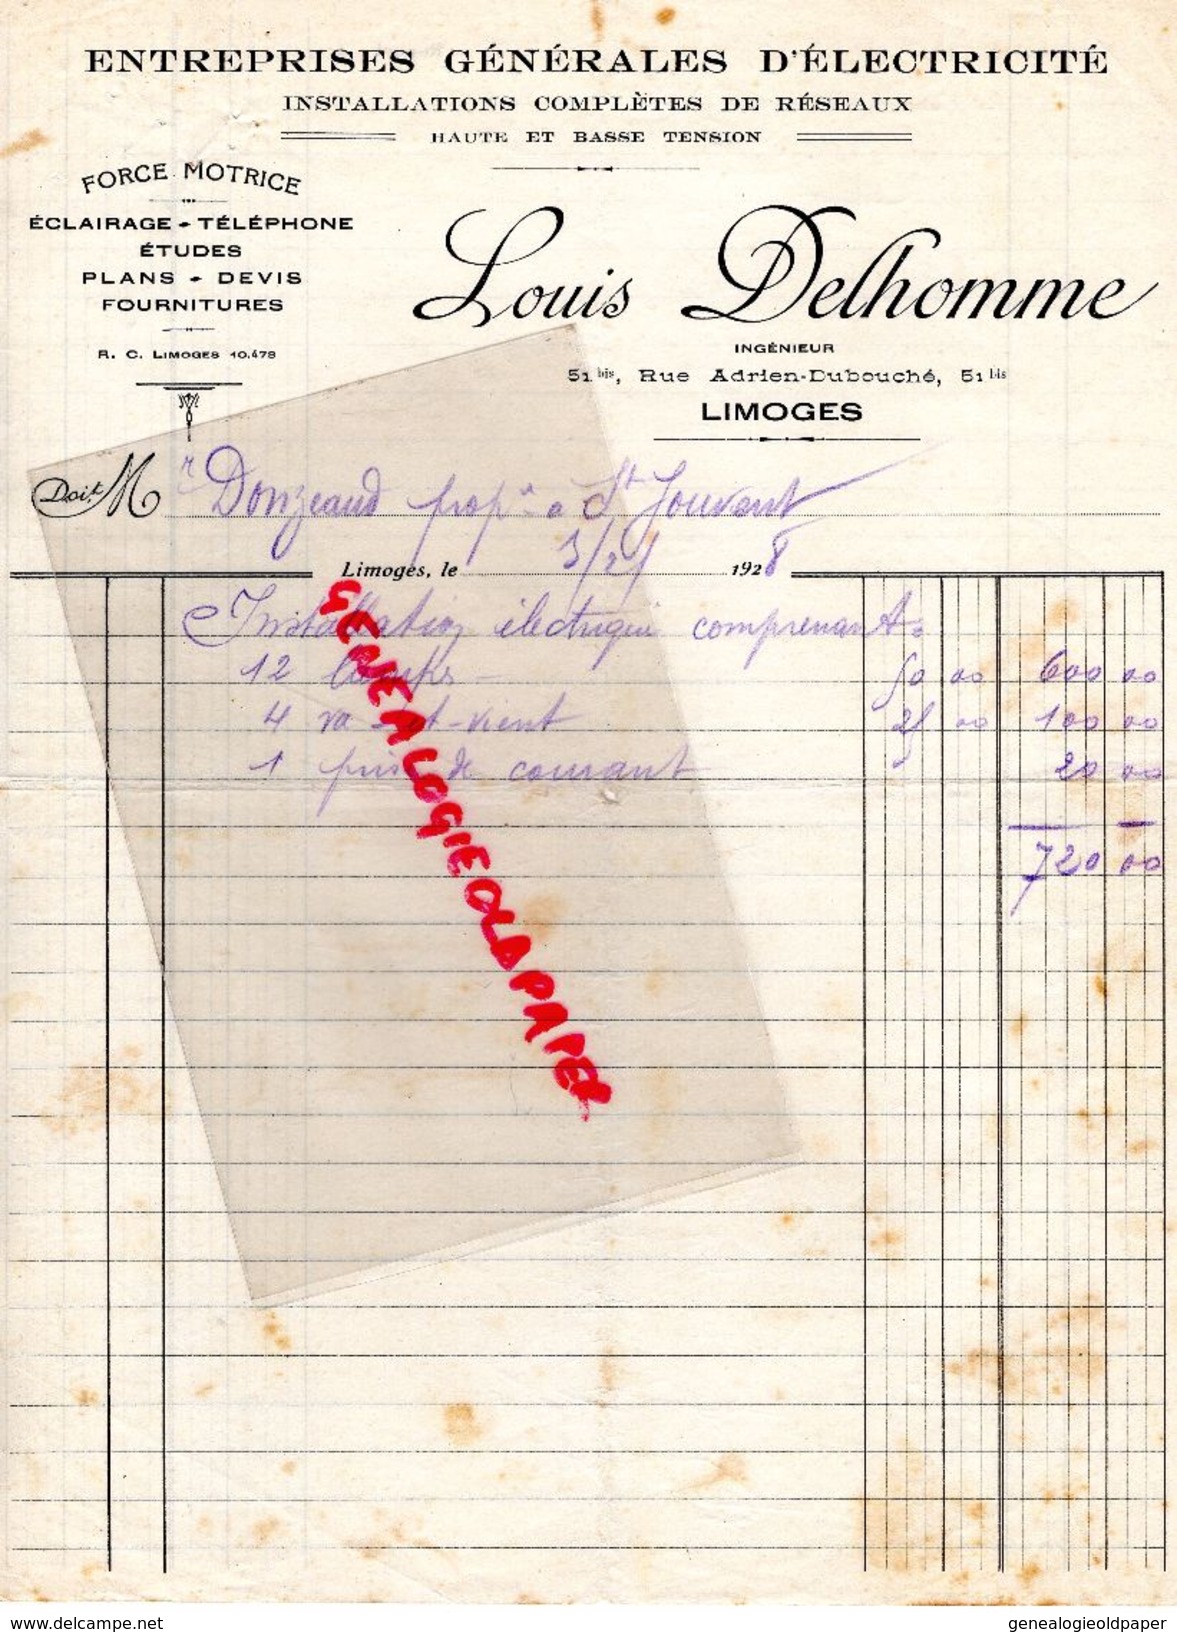 87 - LIMOGES - FACTURE LOUIS DELHOMME -INGENIEUR 51 RUE ADRIEN DUBOUCHE- ELECTRICITE FORCE MOTRICE- 1928 - Electricidad & Gas